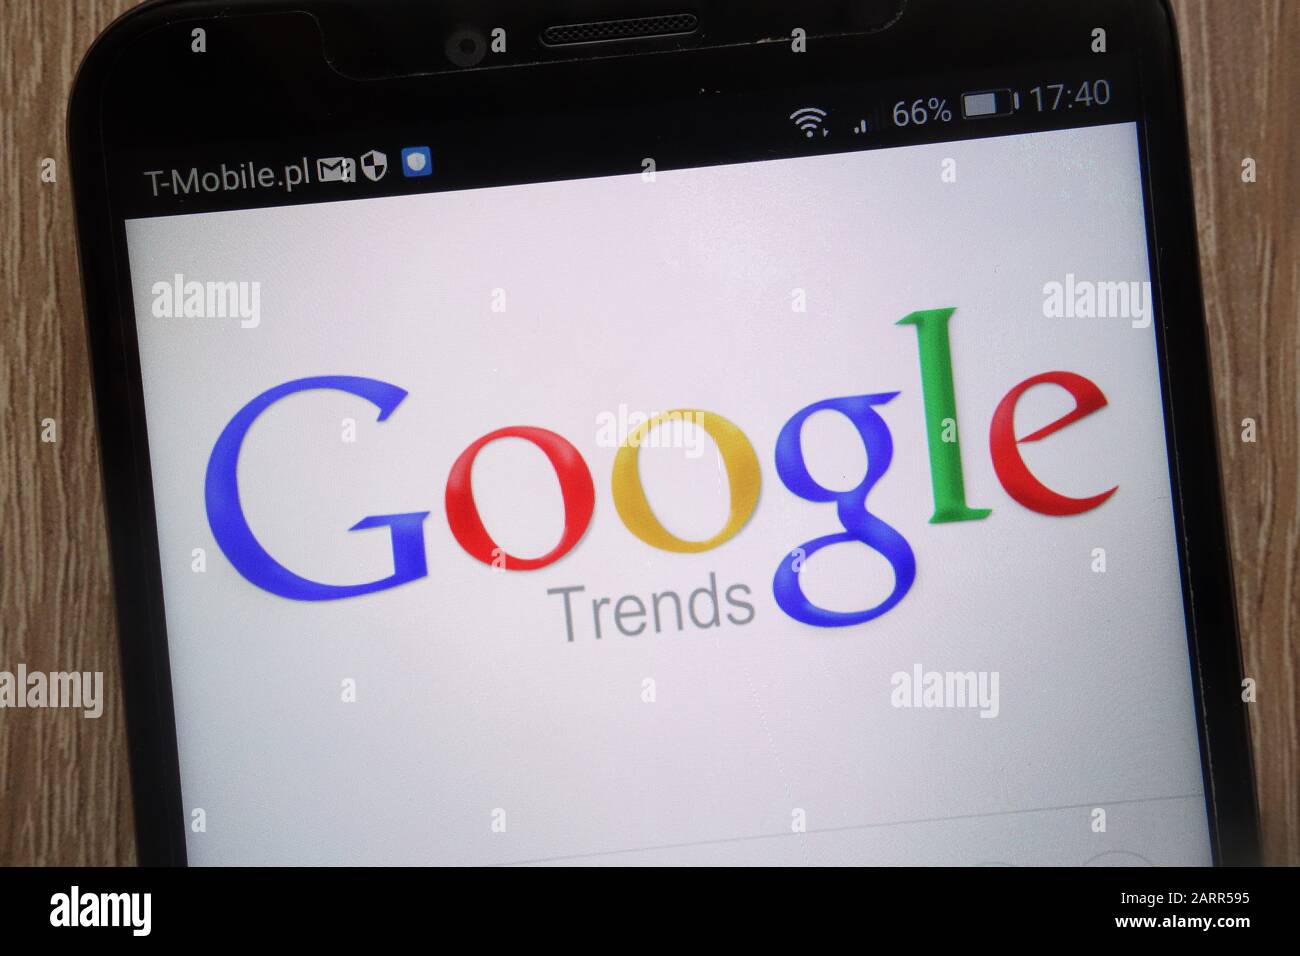 El logotipo de Google Trends se muestra en un smartphone moderno Foto de stock